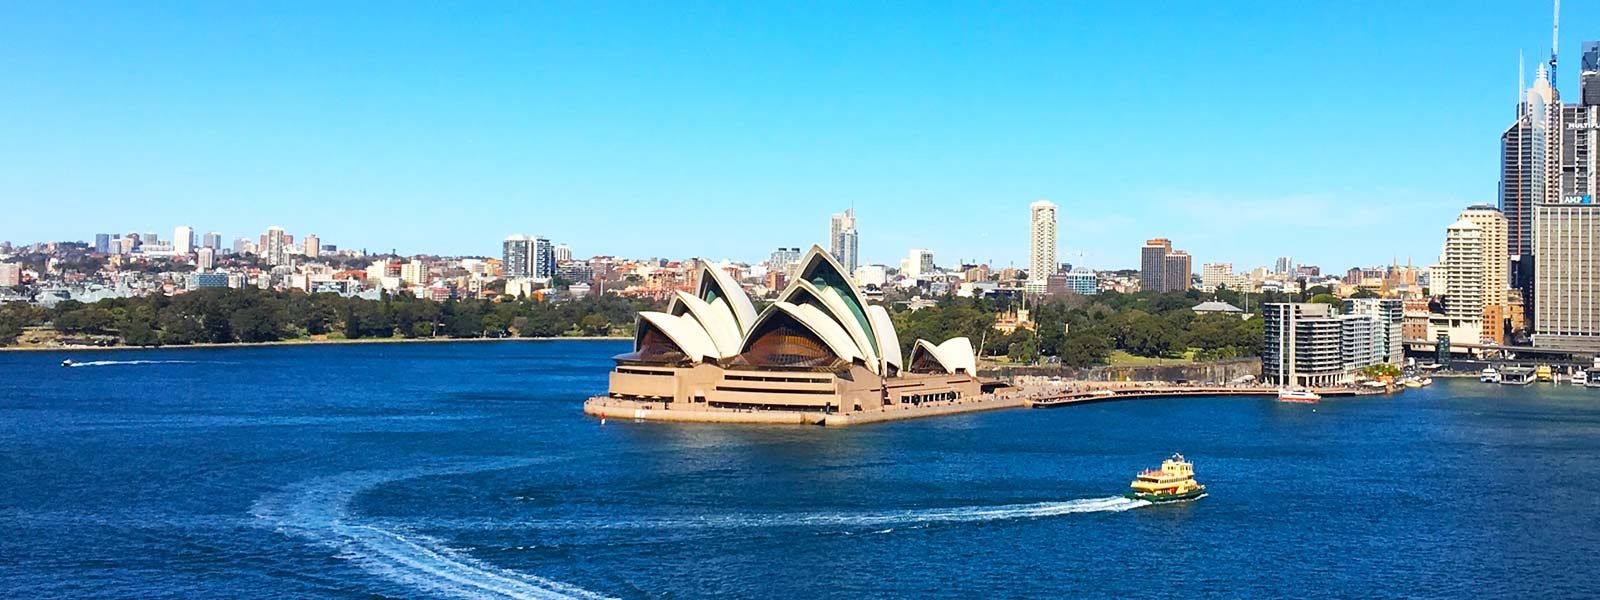 Skyline van Sydney met het Opera House